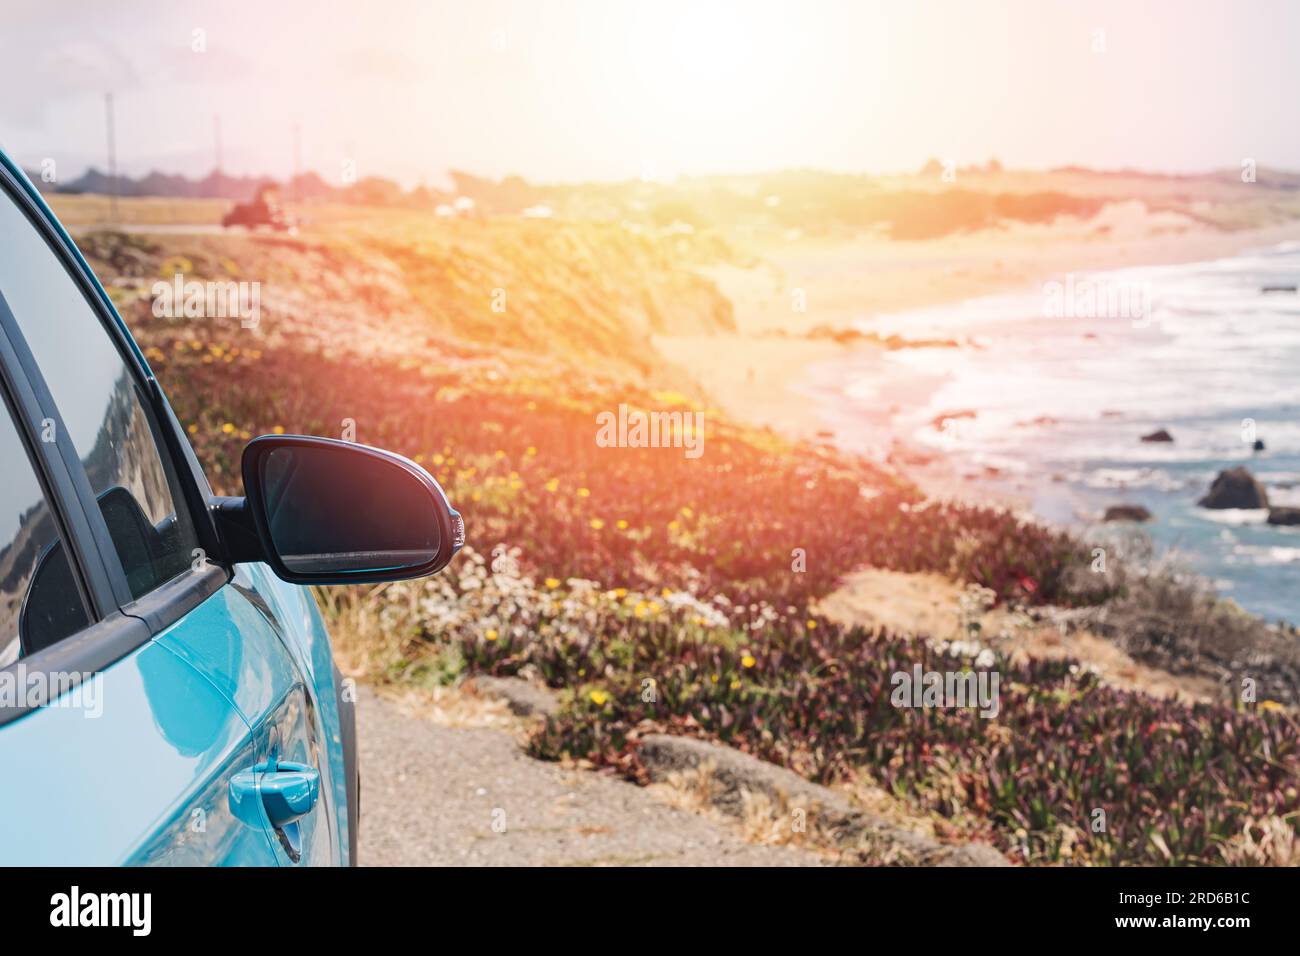 Gros plan du miroir de voiture bleue près de l'océan avec une lueur chaude, concept Road trip Banque D'Images